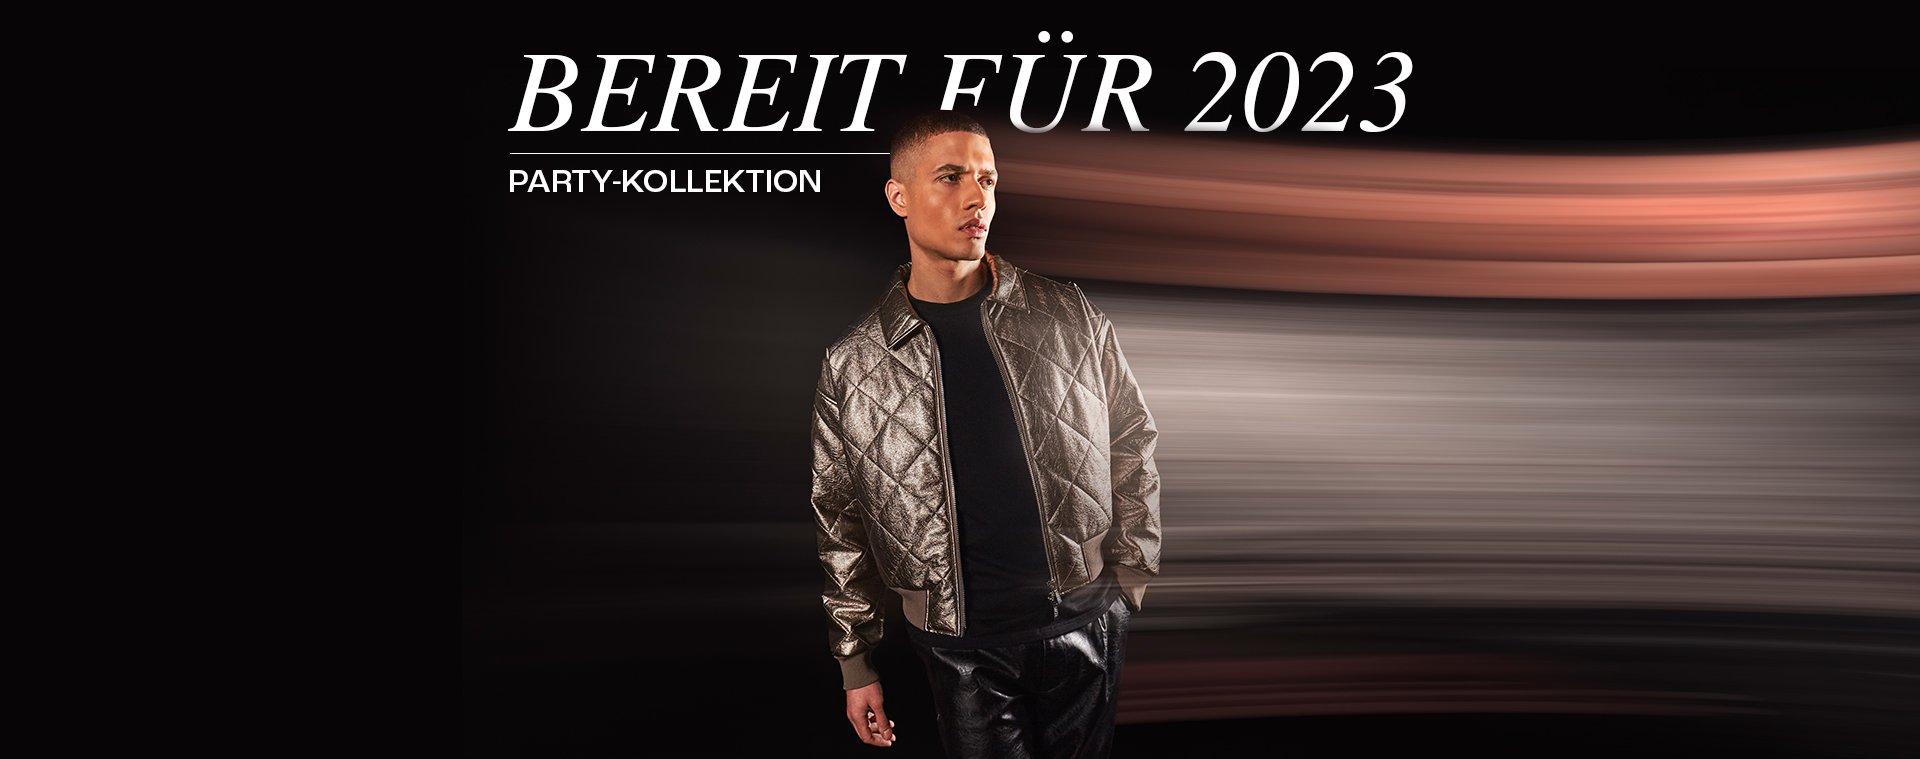 BEREIT FÜR 2023 Party-Kollektion